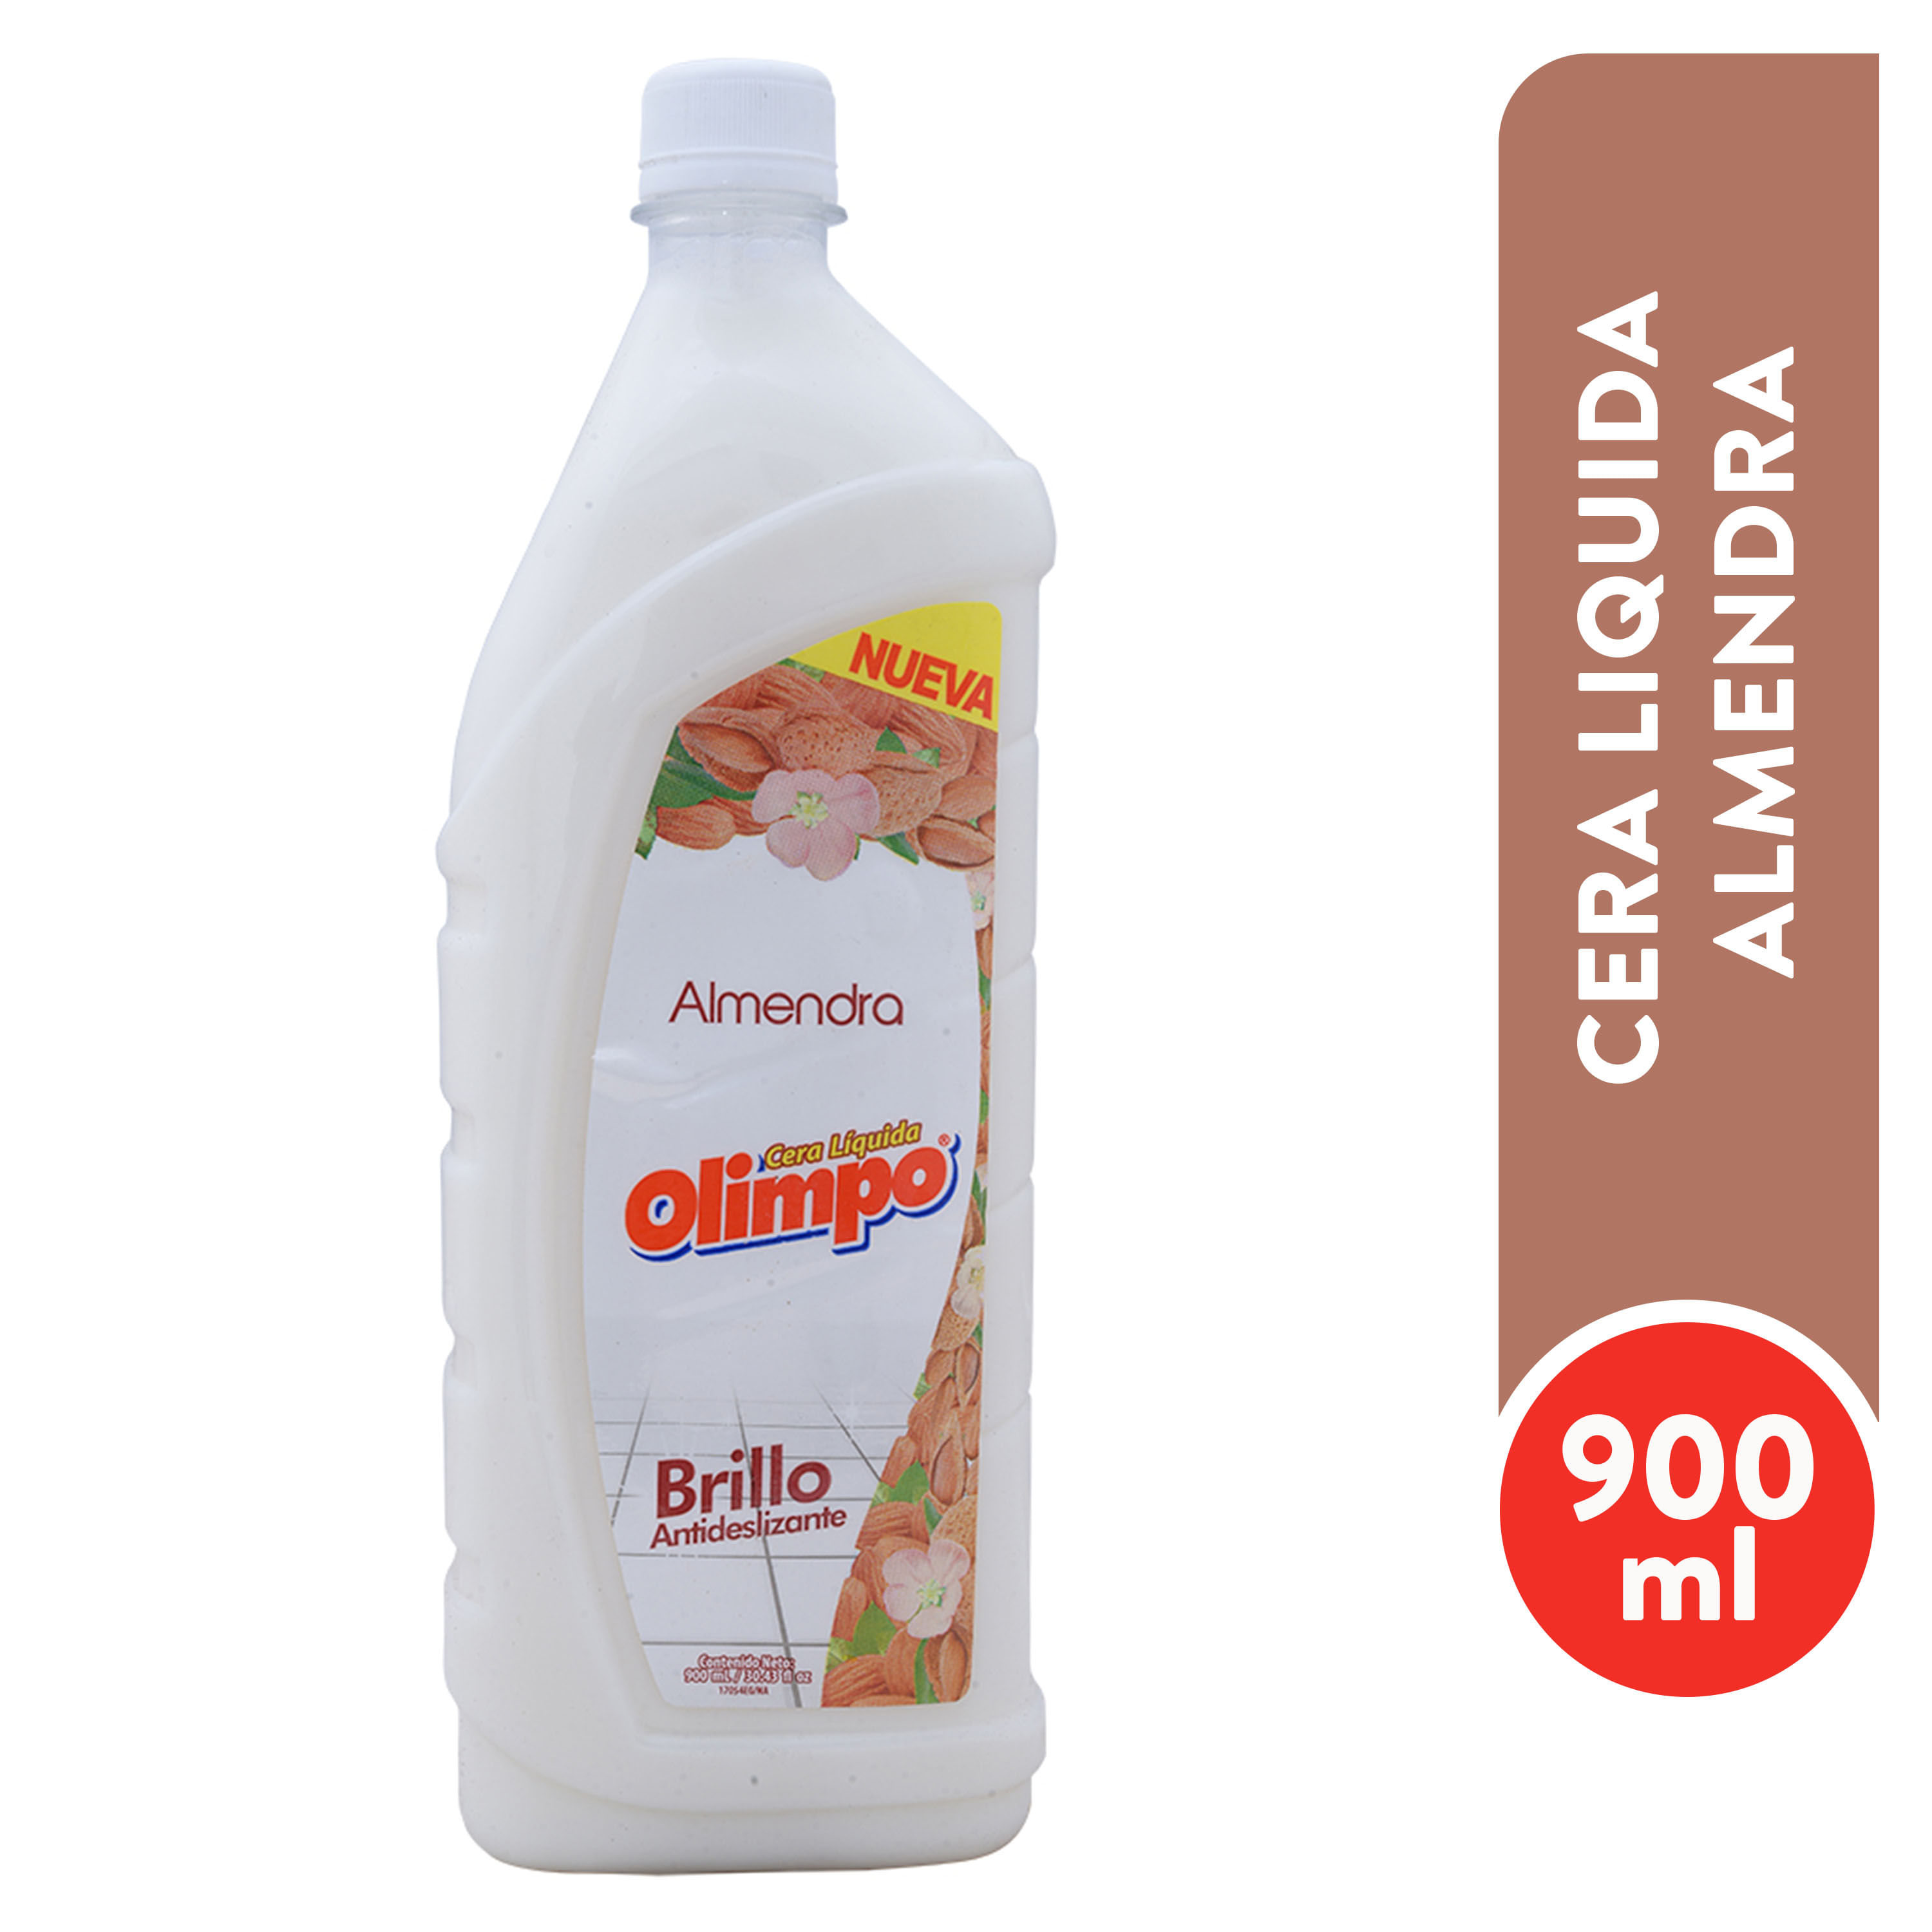 Cera-Olimpo-Almendra-Liquida-900ml-1-6442